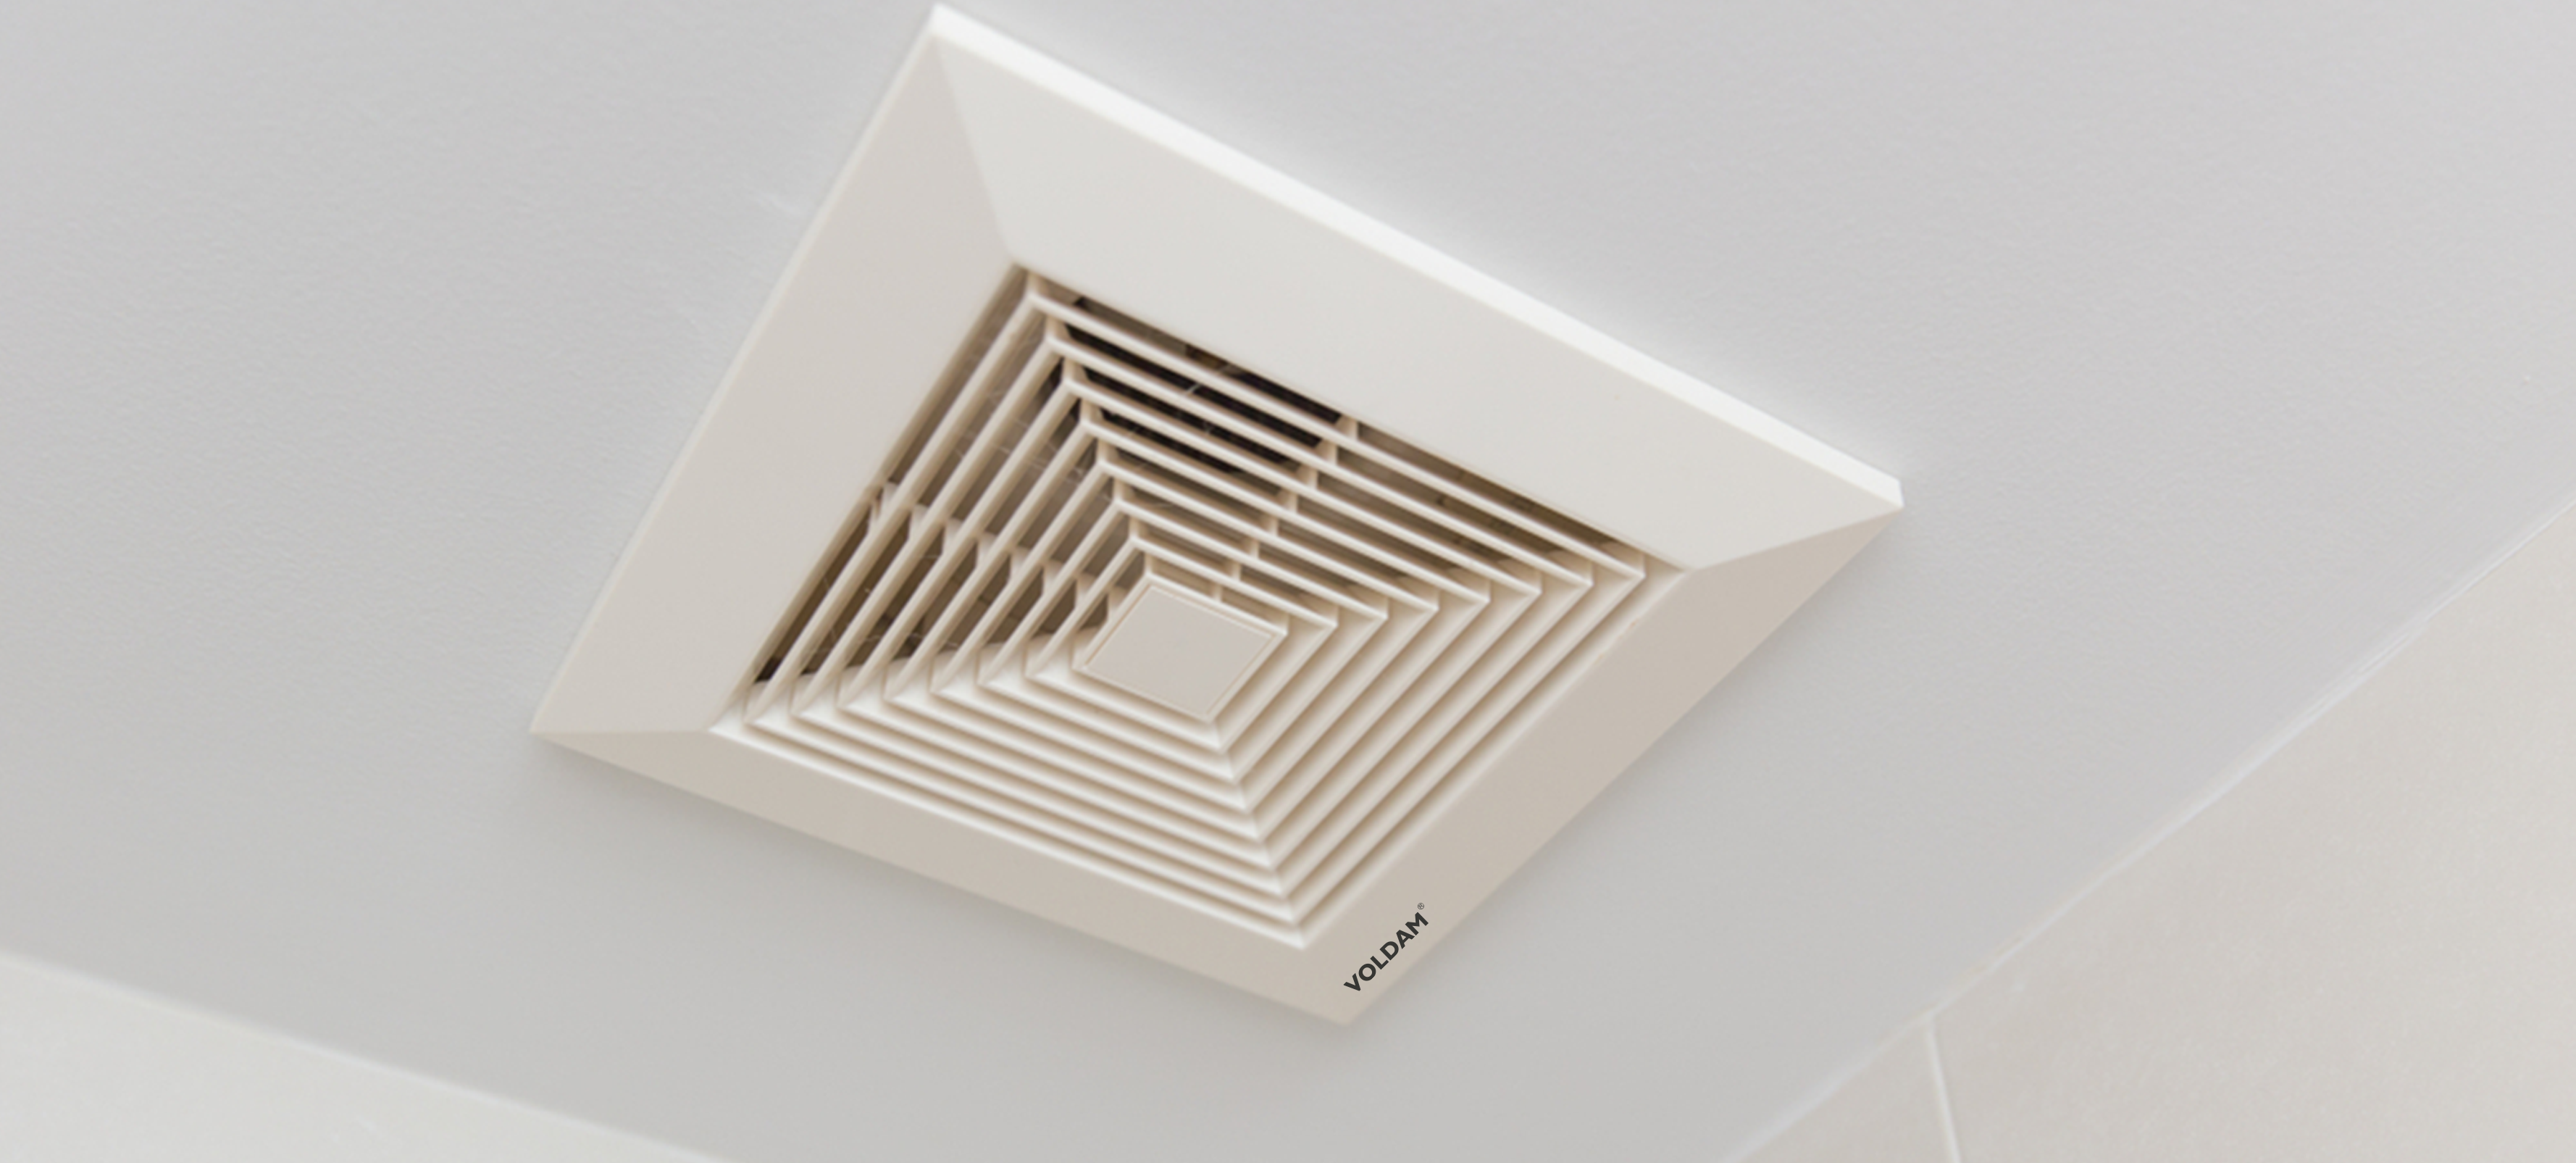 Ceiling mount exhaust fan